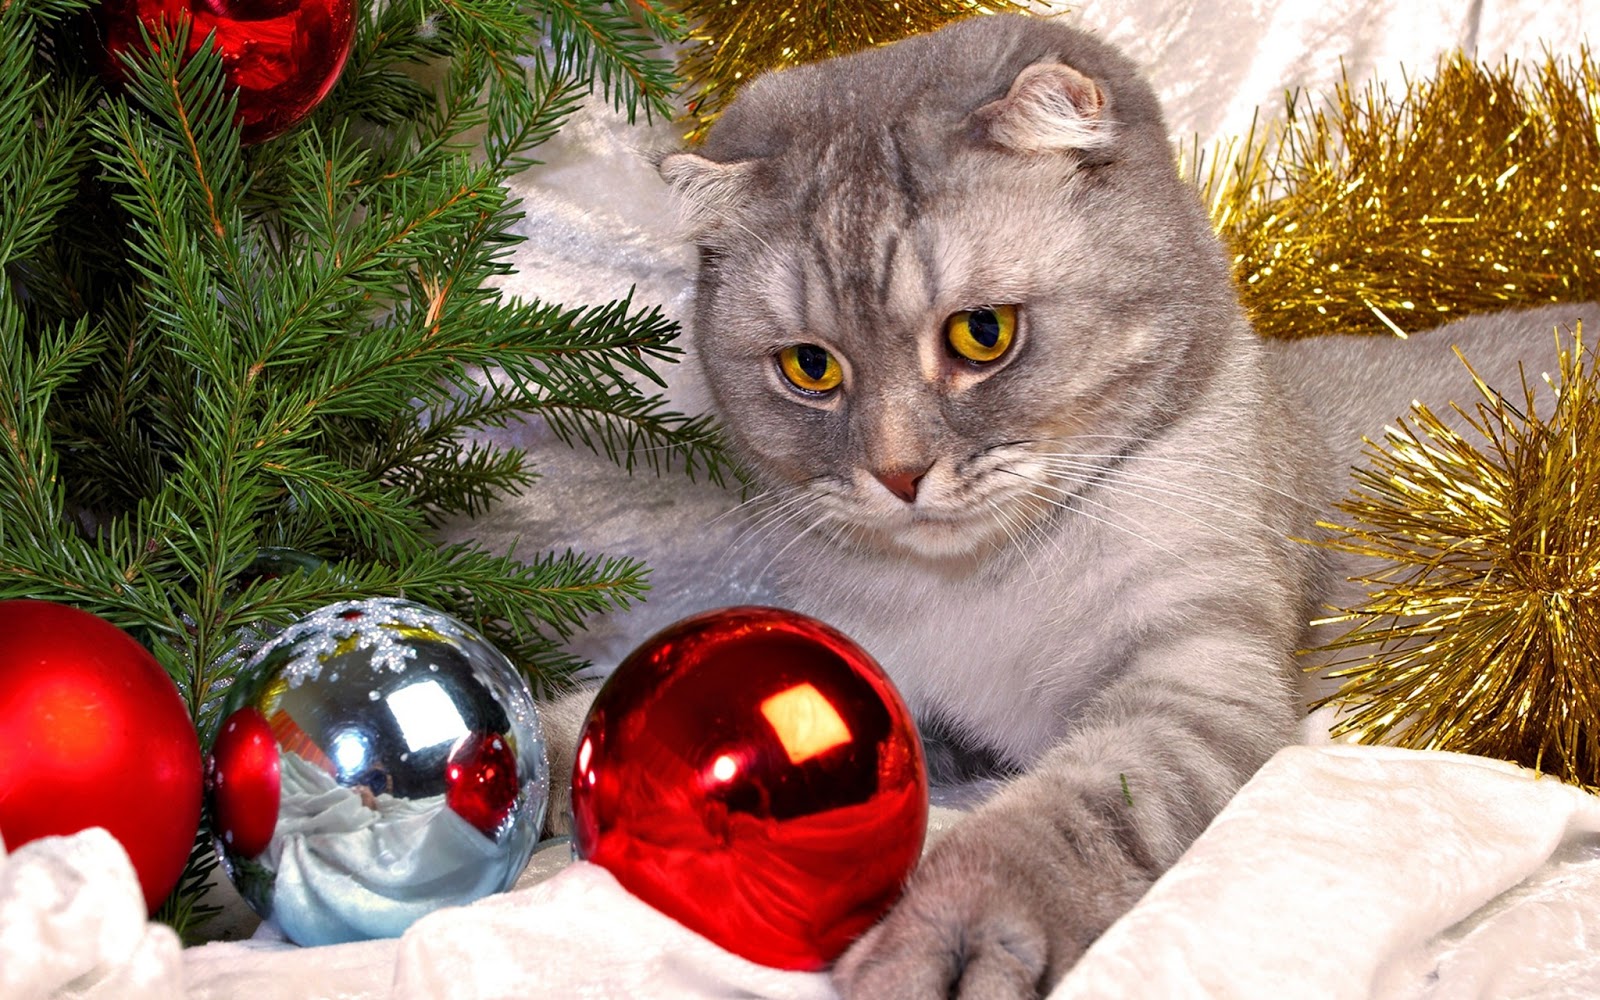 gato imágenes hd fondo de pantalla,decoración navideña,árbol de navidad,navidad,gato,decoración navideña